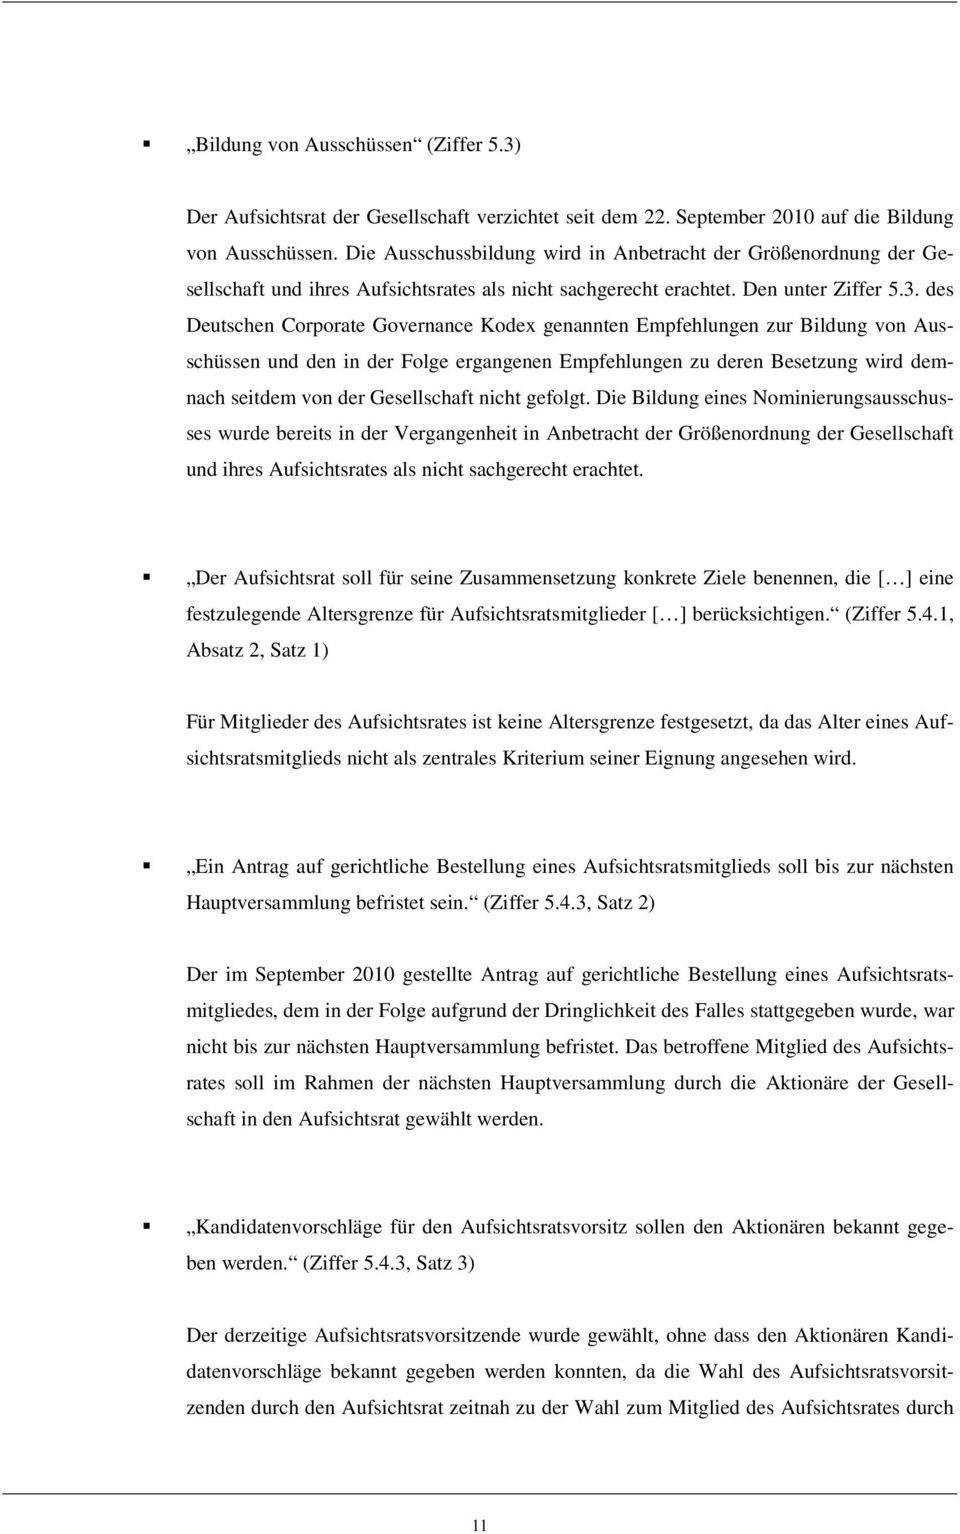 des Deutschen Corporate Governance Kodex genannten Empfehlungen zur Bildung von Ausschüssen und den in der Folge ergangenen Empfehlungen zu deren Besetzung wird demnach seitdem von der Gesellschaft